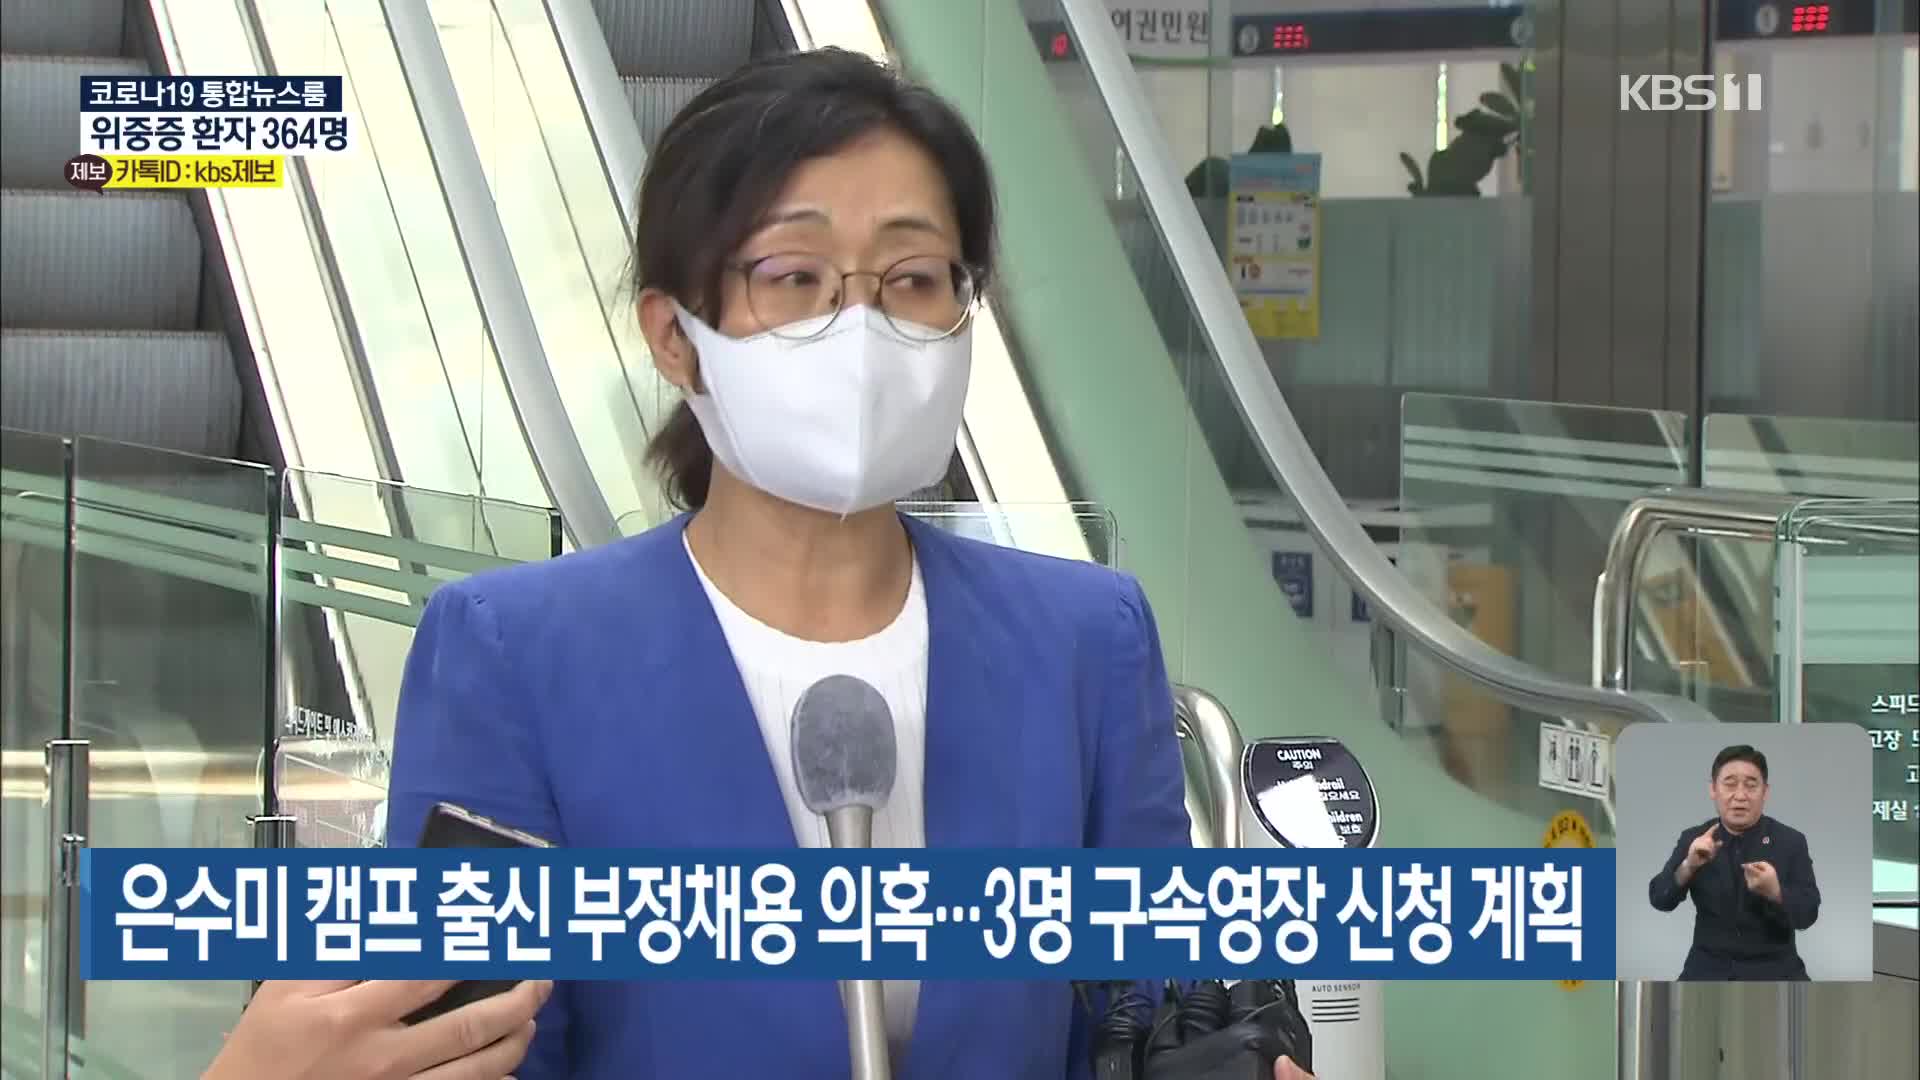 은수미 캠프 출신 부정채용 의혹…3명 구속영장 신청 계획